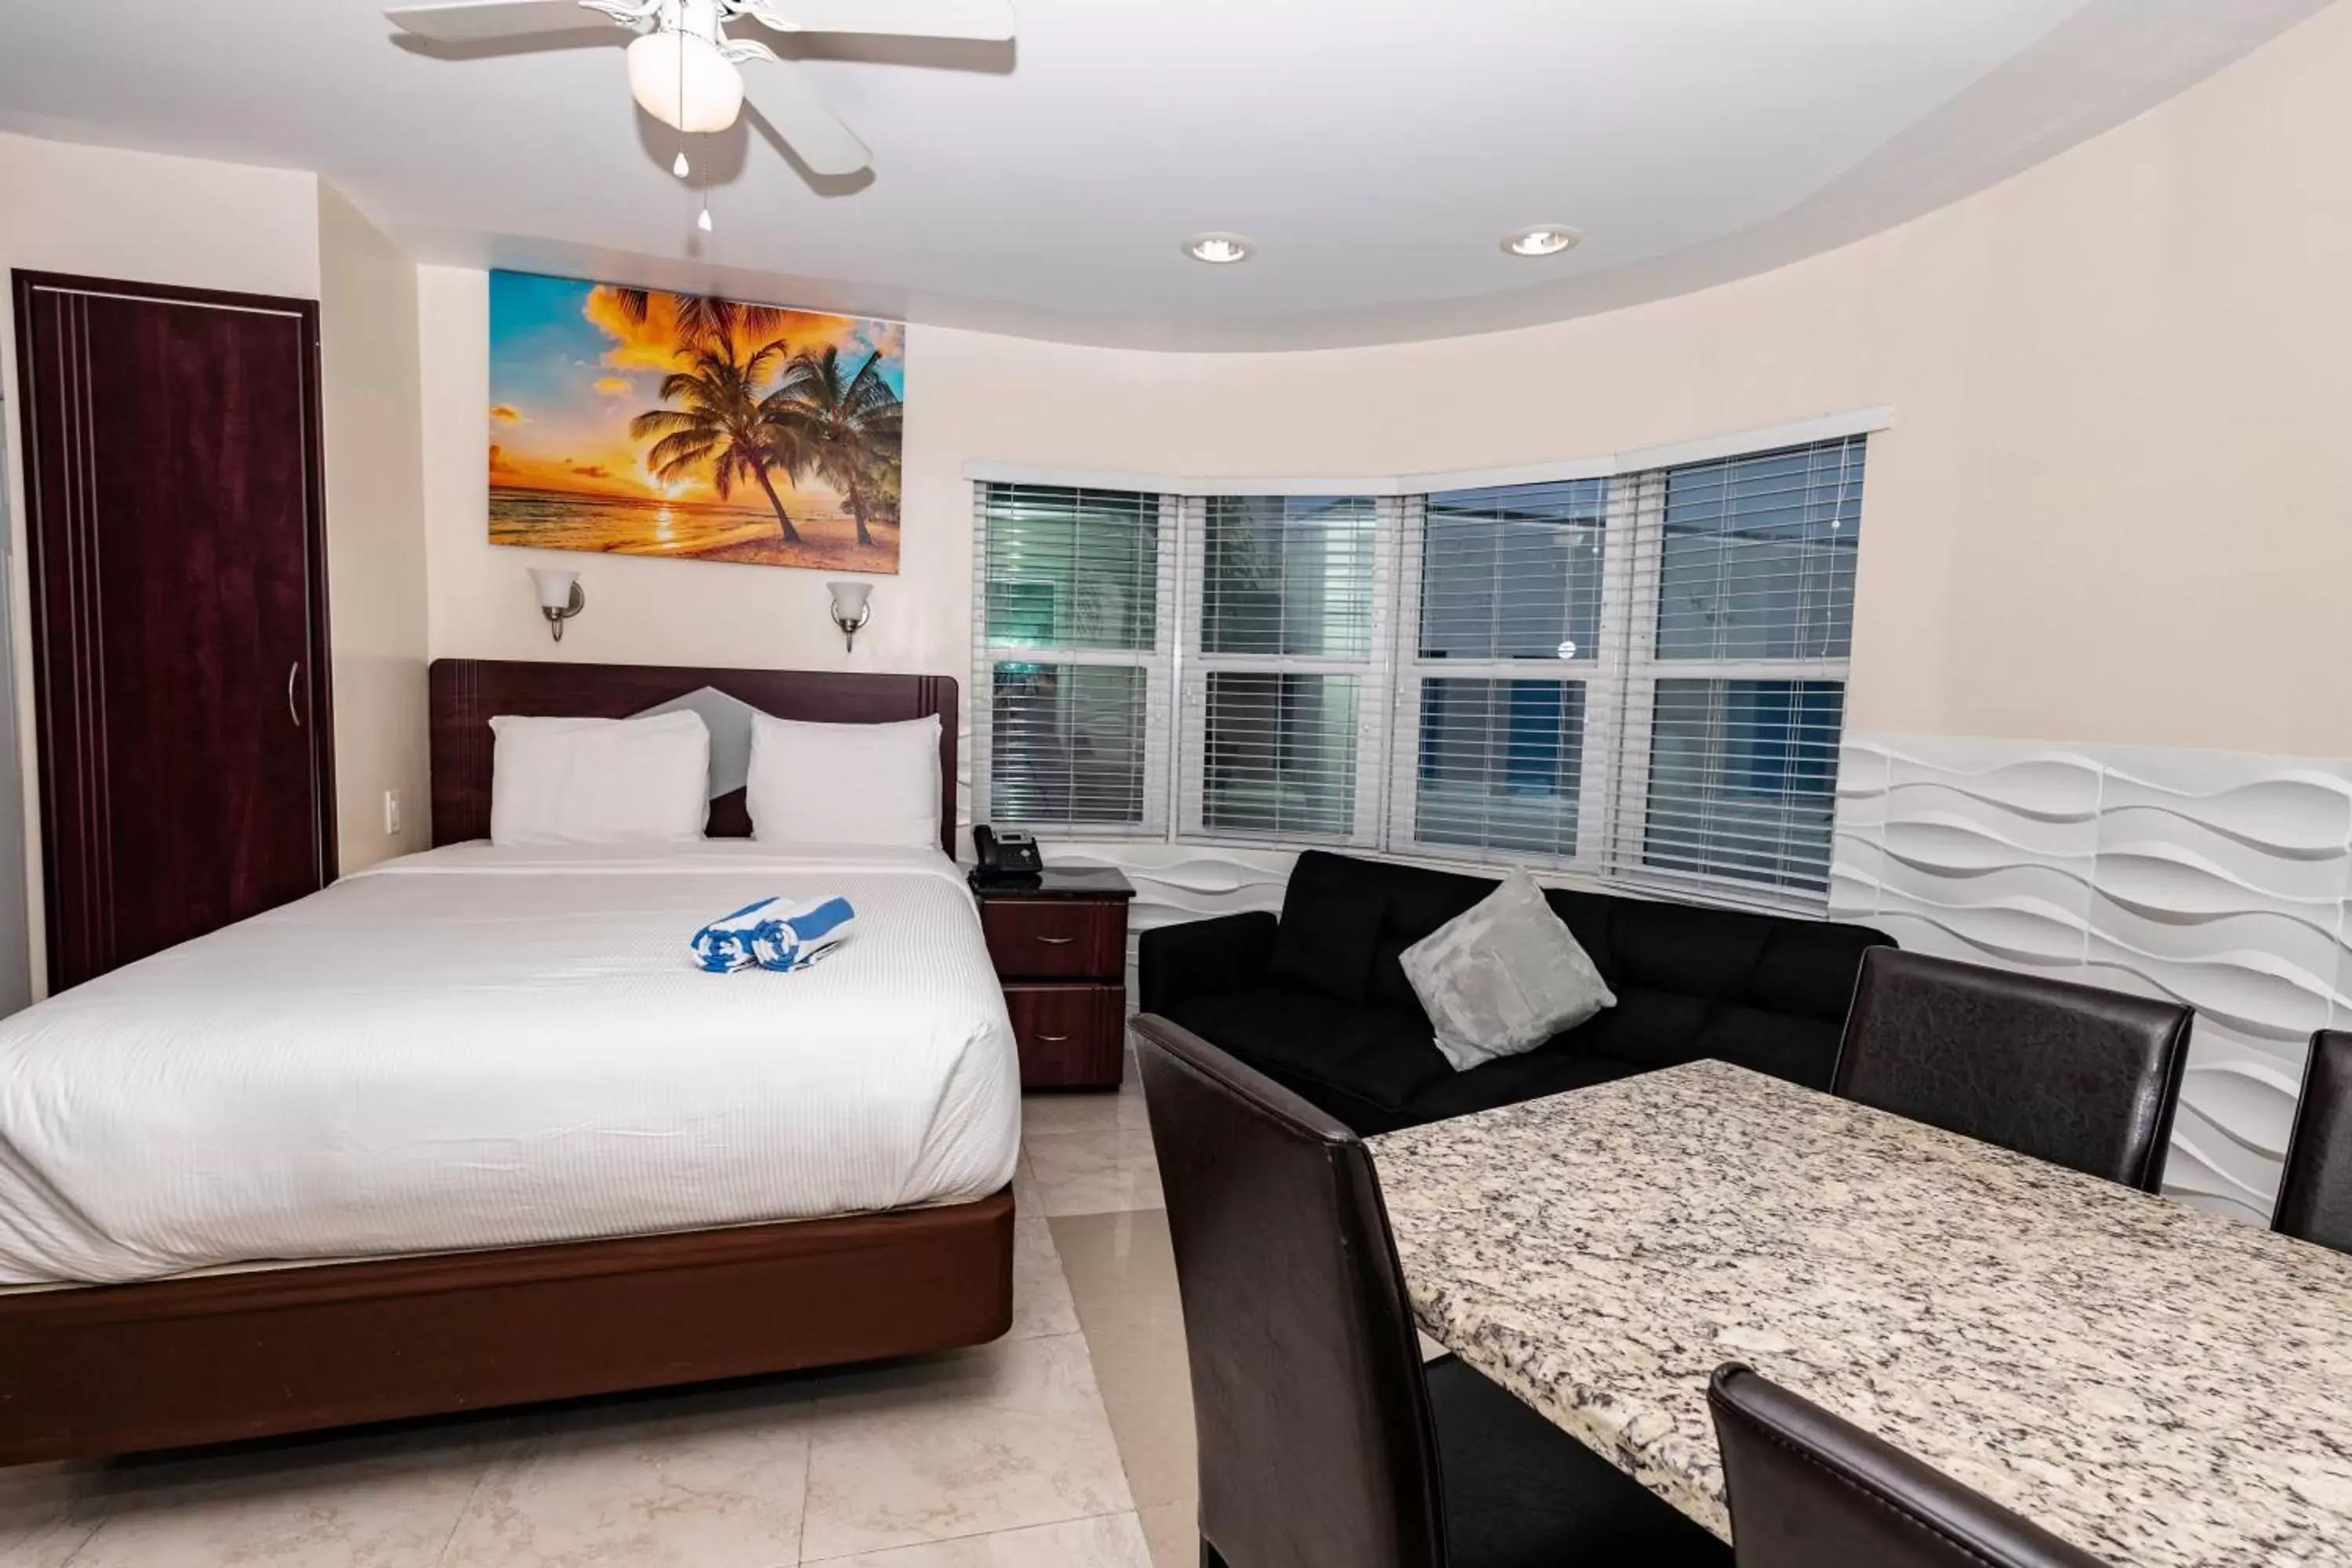 Bedroom in Caribbean Resort by the Ocean